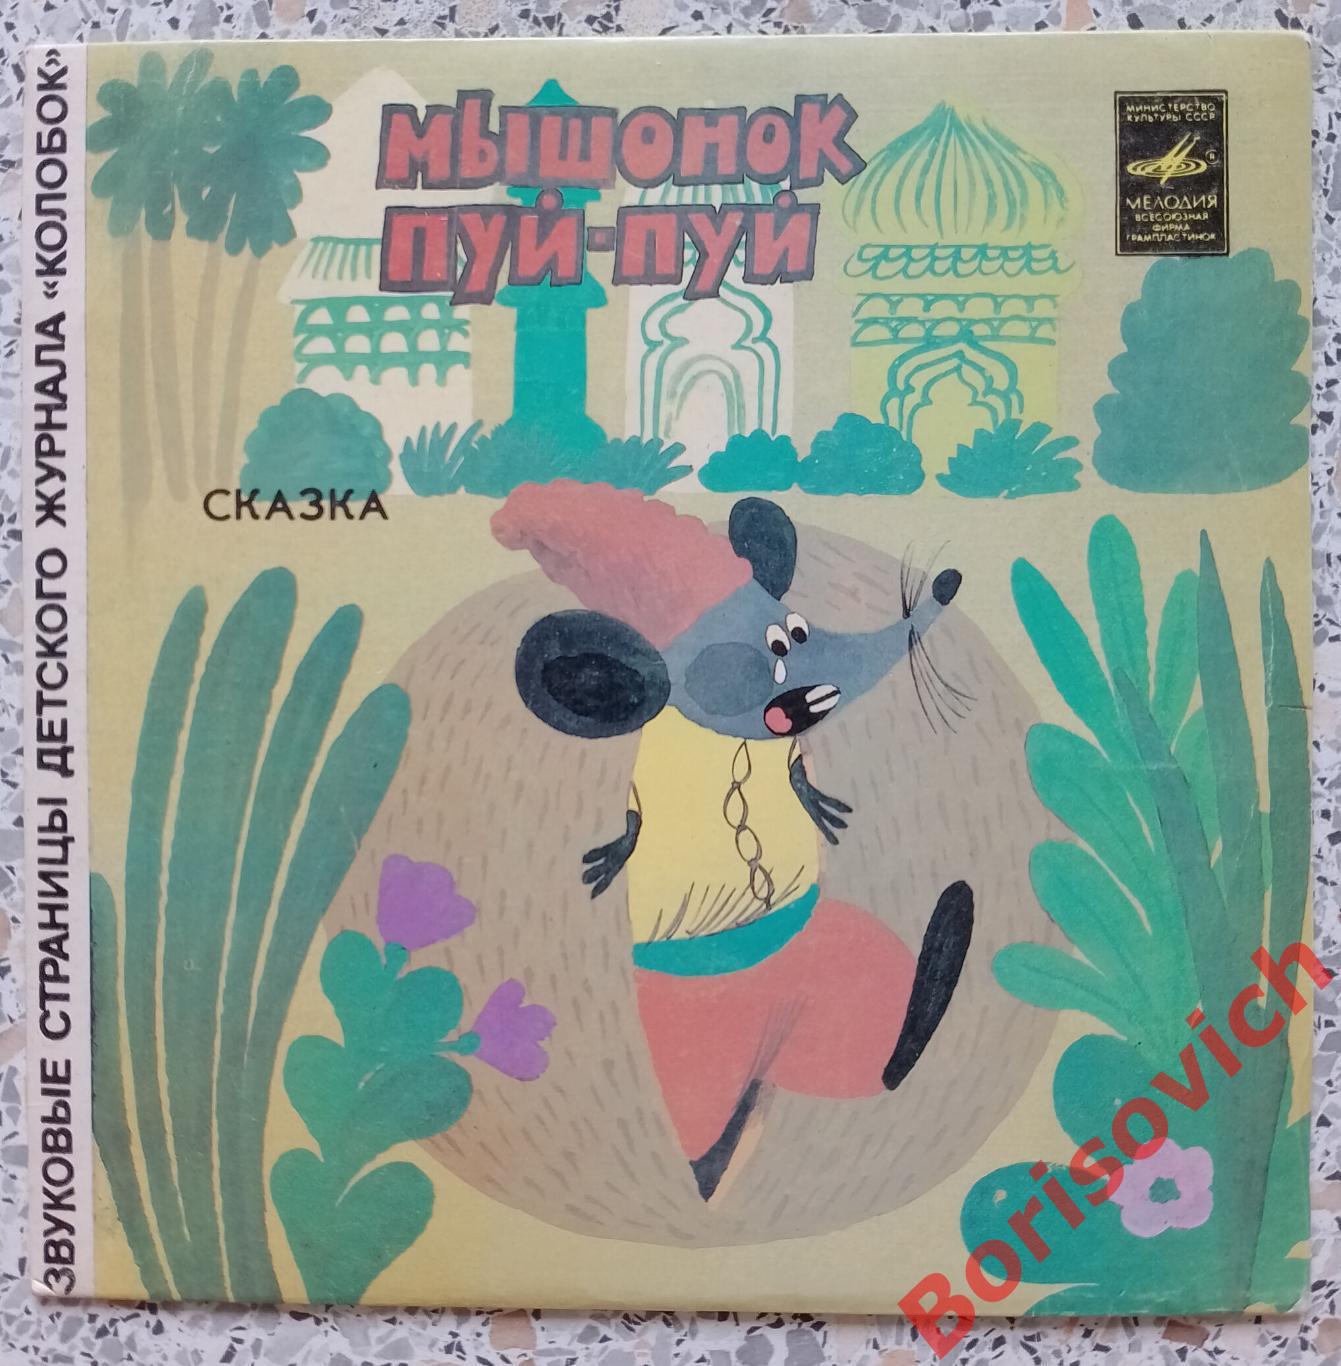 МЫШОНОК ПУЙ - ПУЙ / РАЧОК - ГАДАЛЬЩИК Мелодия 1981